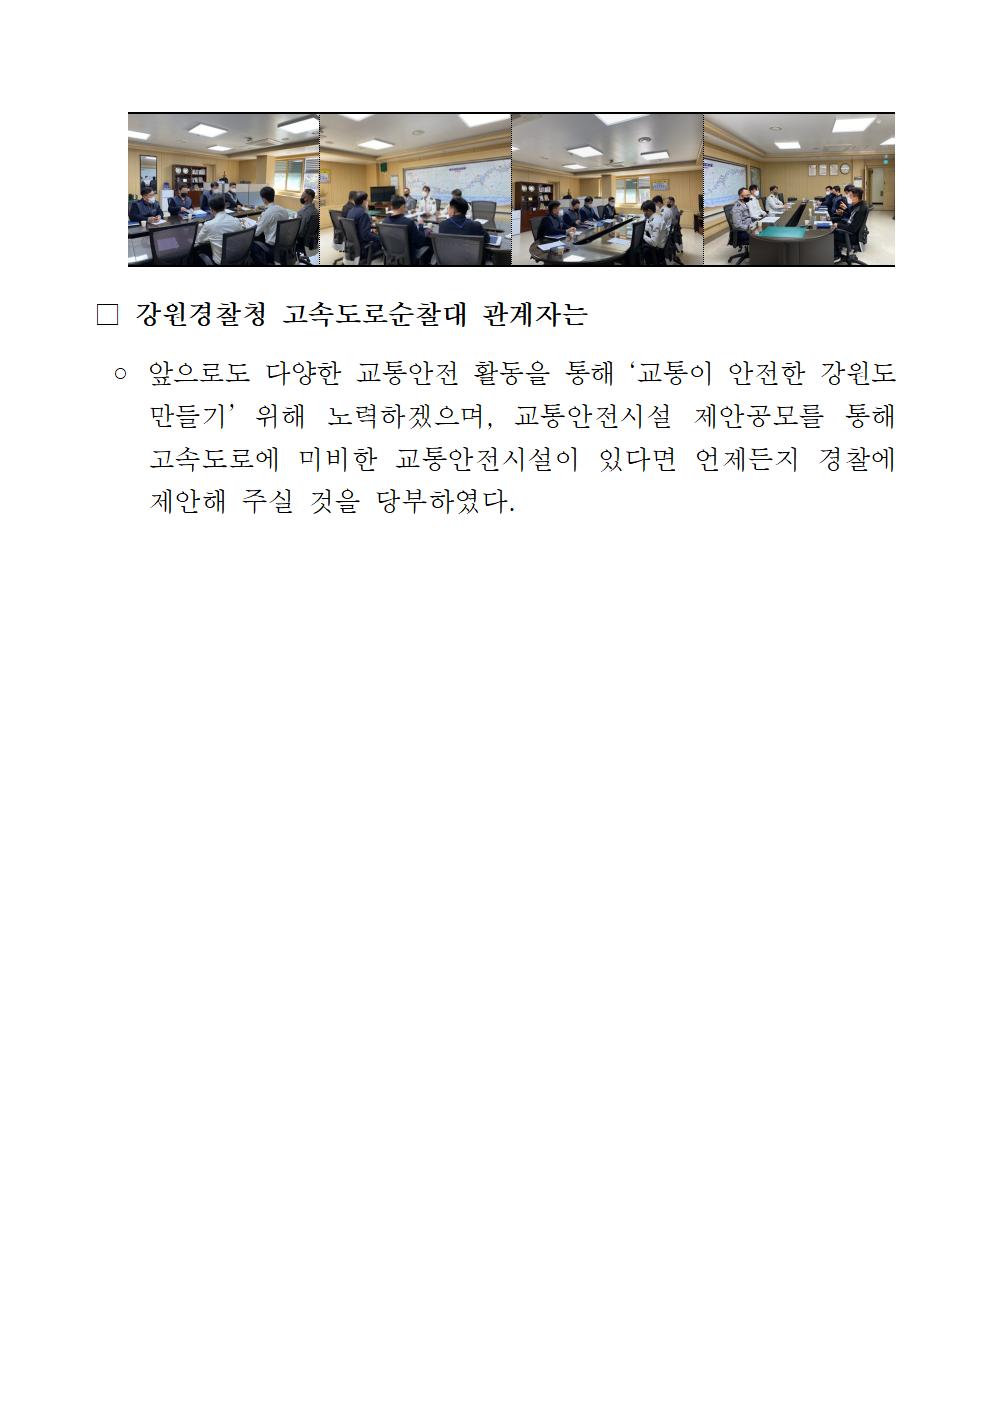 고속도로가 안전한 강원만들기 간담회 개최-220322 언론보도자료 (안전한 강원만들기 간담회)002